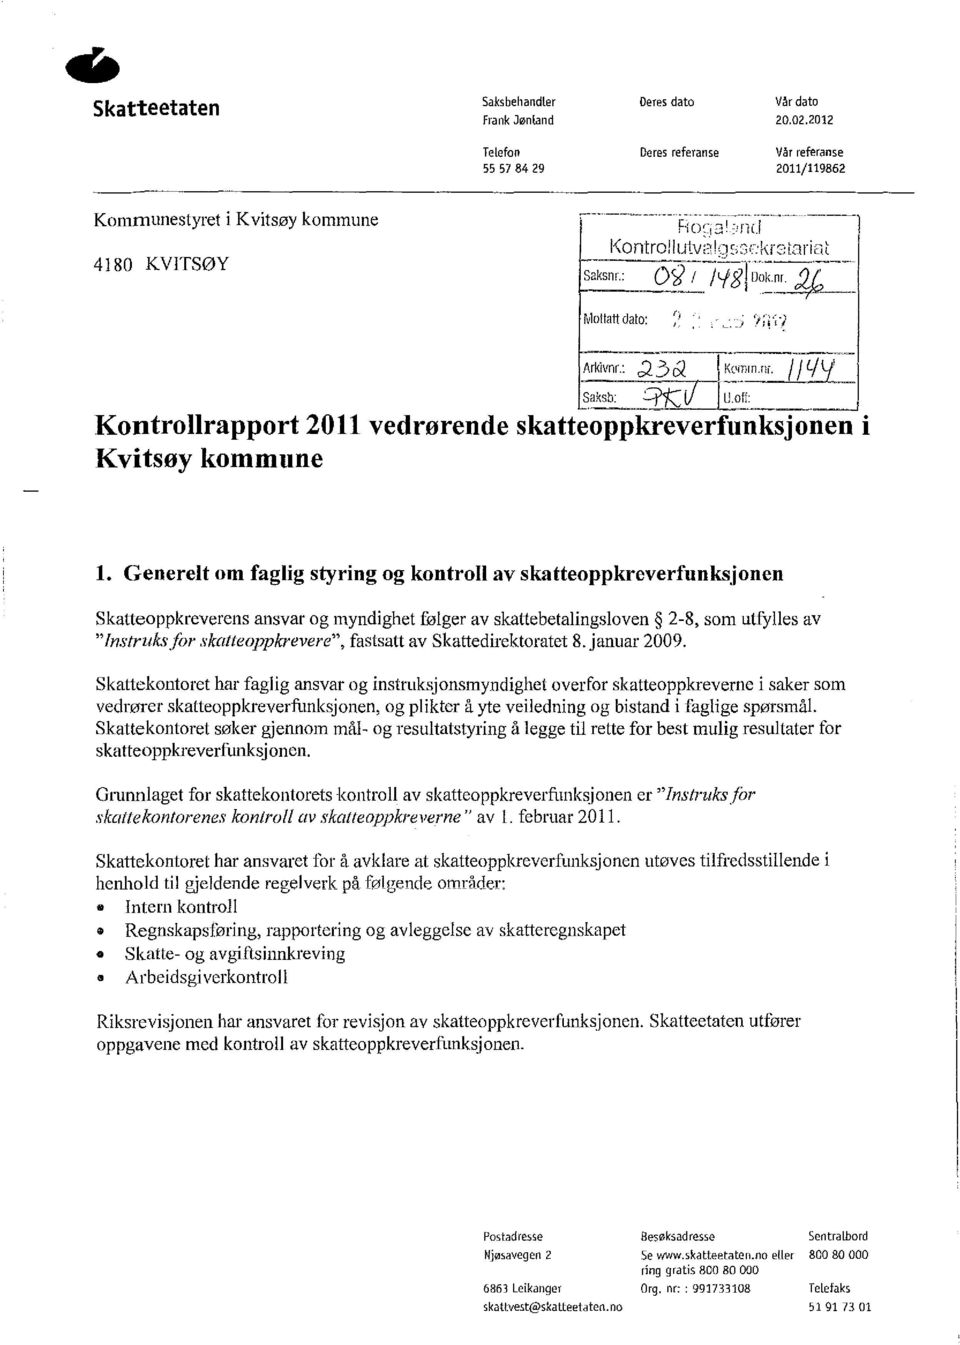 I / Li Y Saksb: :::rt( il I U off Kontrollrapport 2011 vedrørende skatteoppkreverfunksjonen i Kvitsøy kommune l.